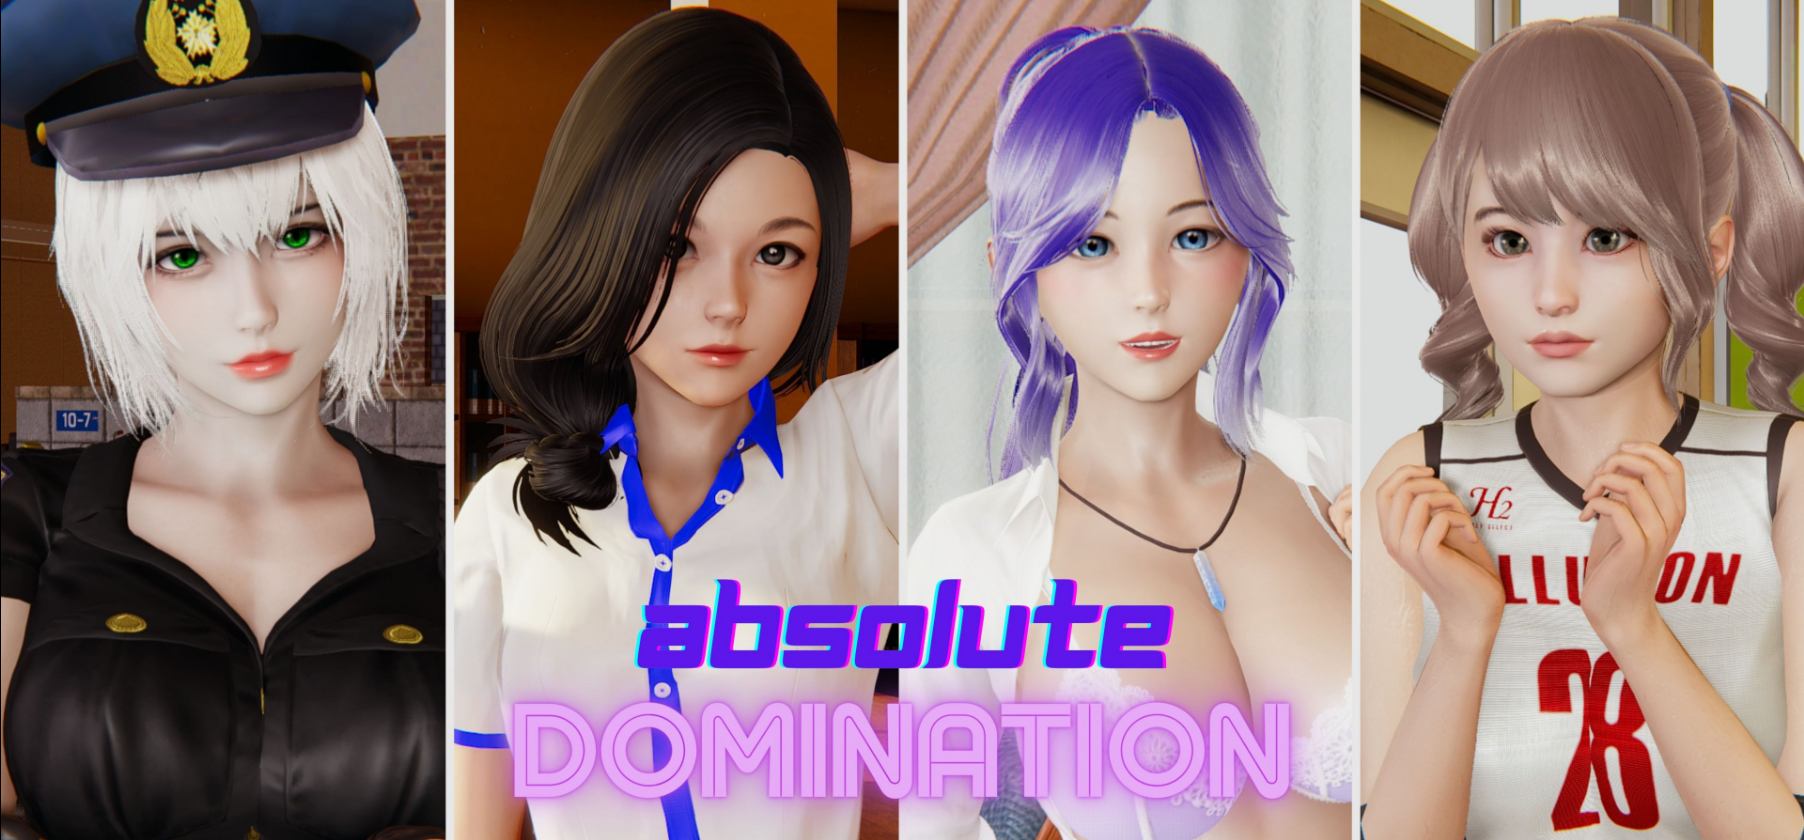 [18+ Việt Hóa] Absolute Domination: Rework (v0.2) – Sỡ Hữu Sức Mạnh Kiểm Soát Mấy Cô Em Xinh Đẹp | Android, PC